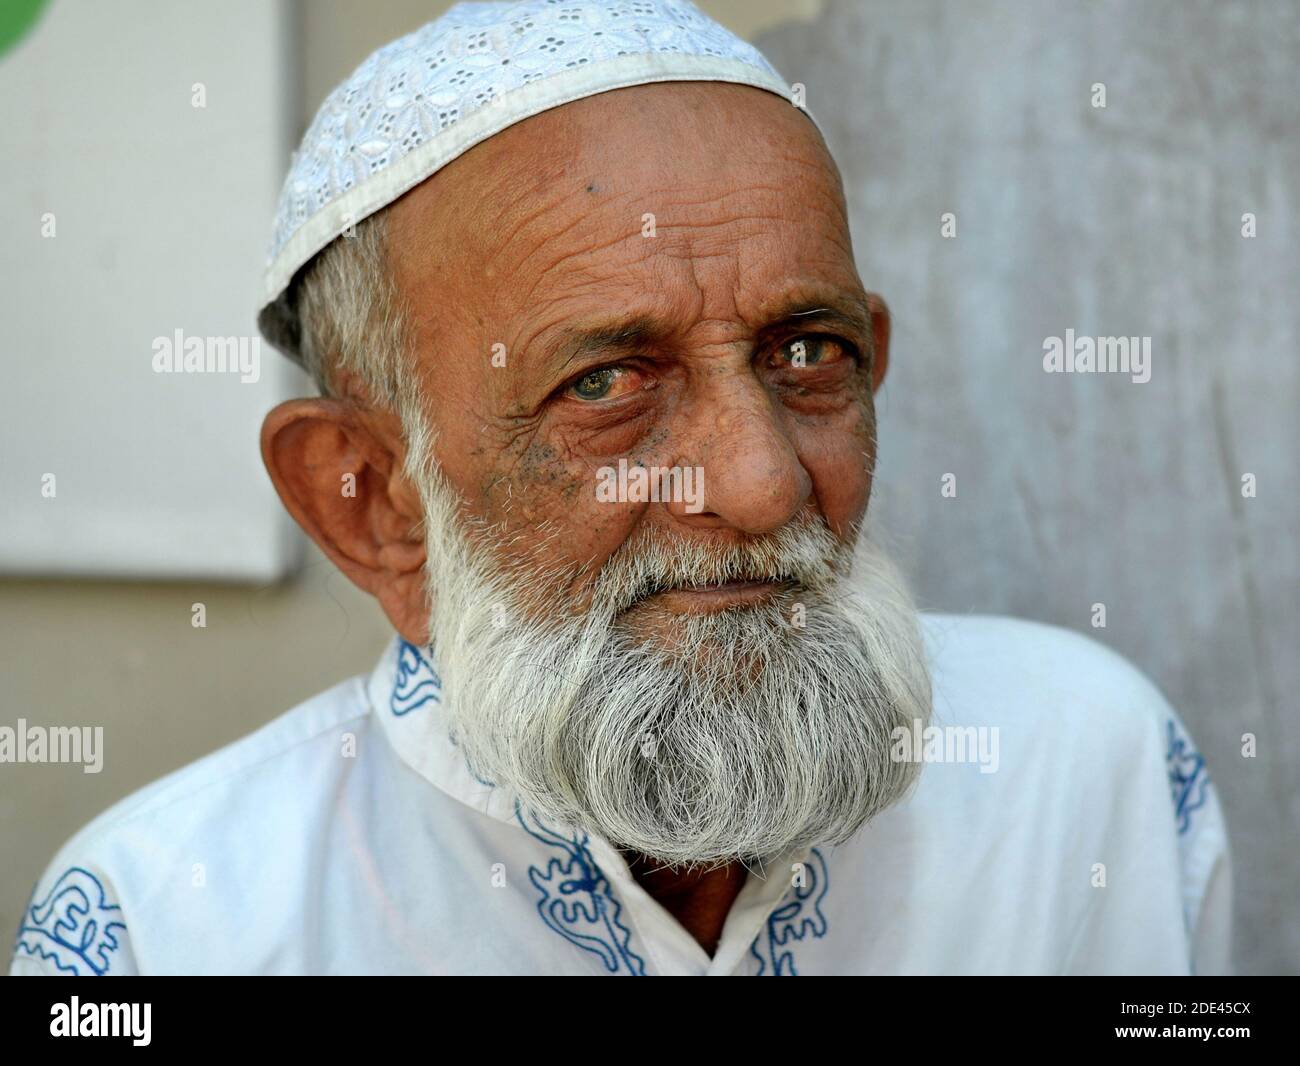 Un homme musulman indien, âgé et sympathique, avec une barbe islamique, porte un chapeau de prière islamique blanc (taqiyah) et pose pour la caméra. Banque D'Images